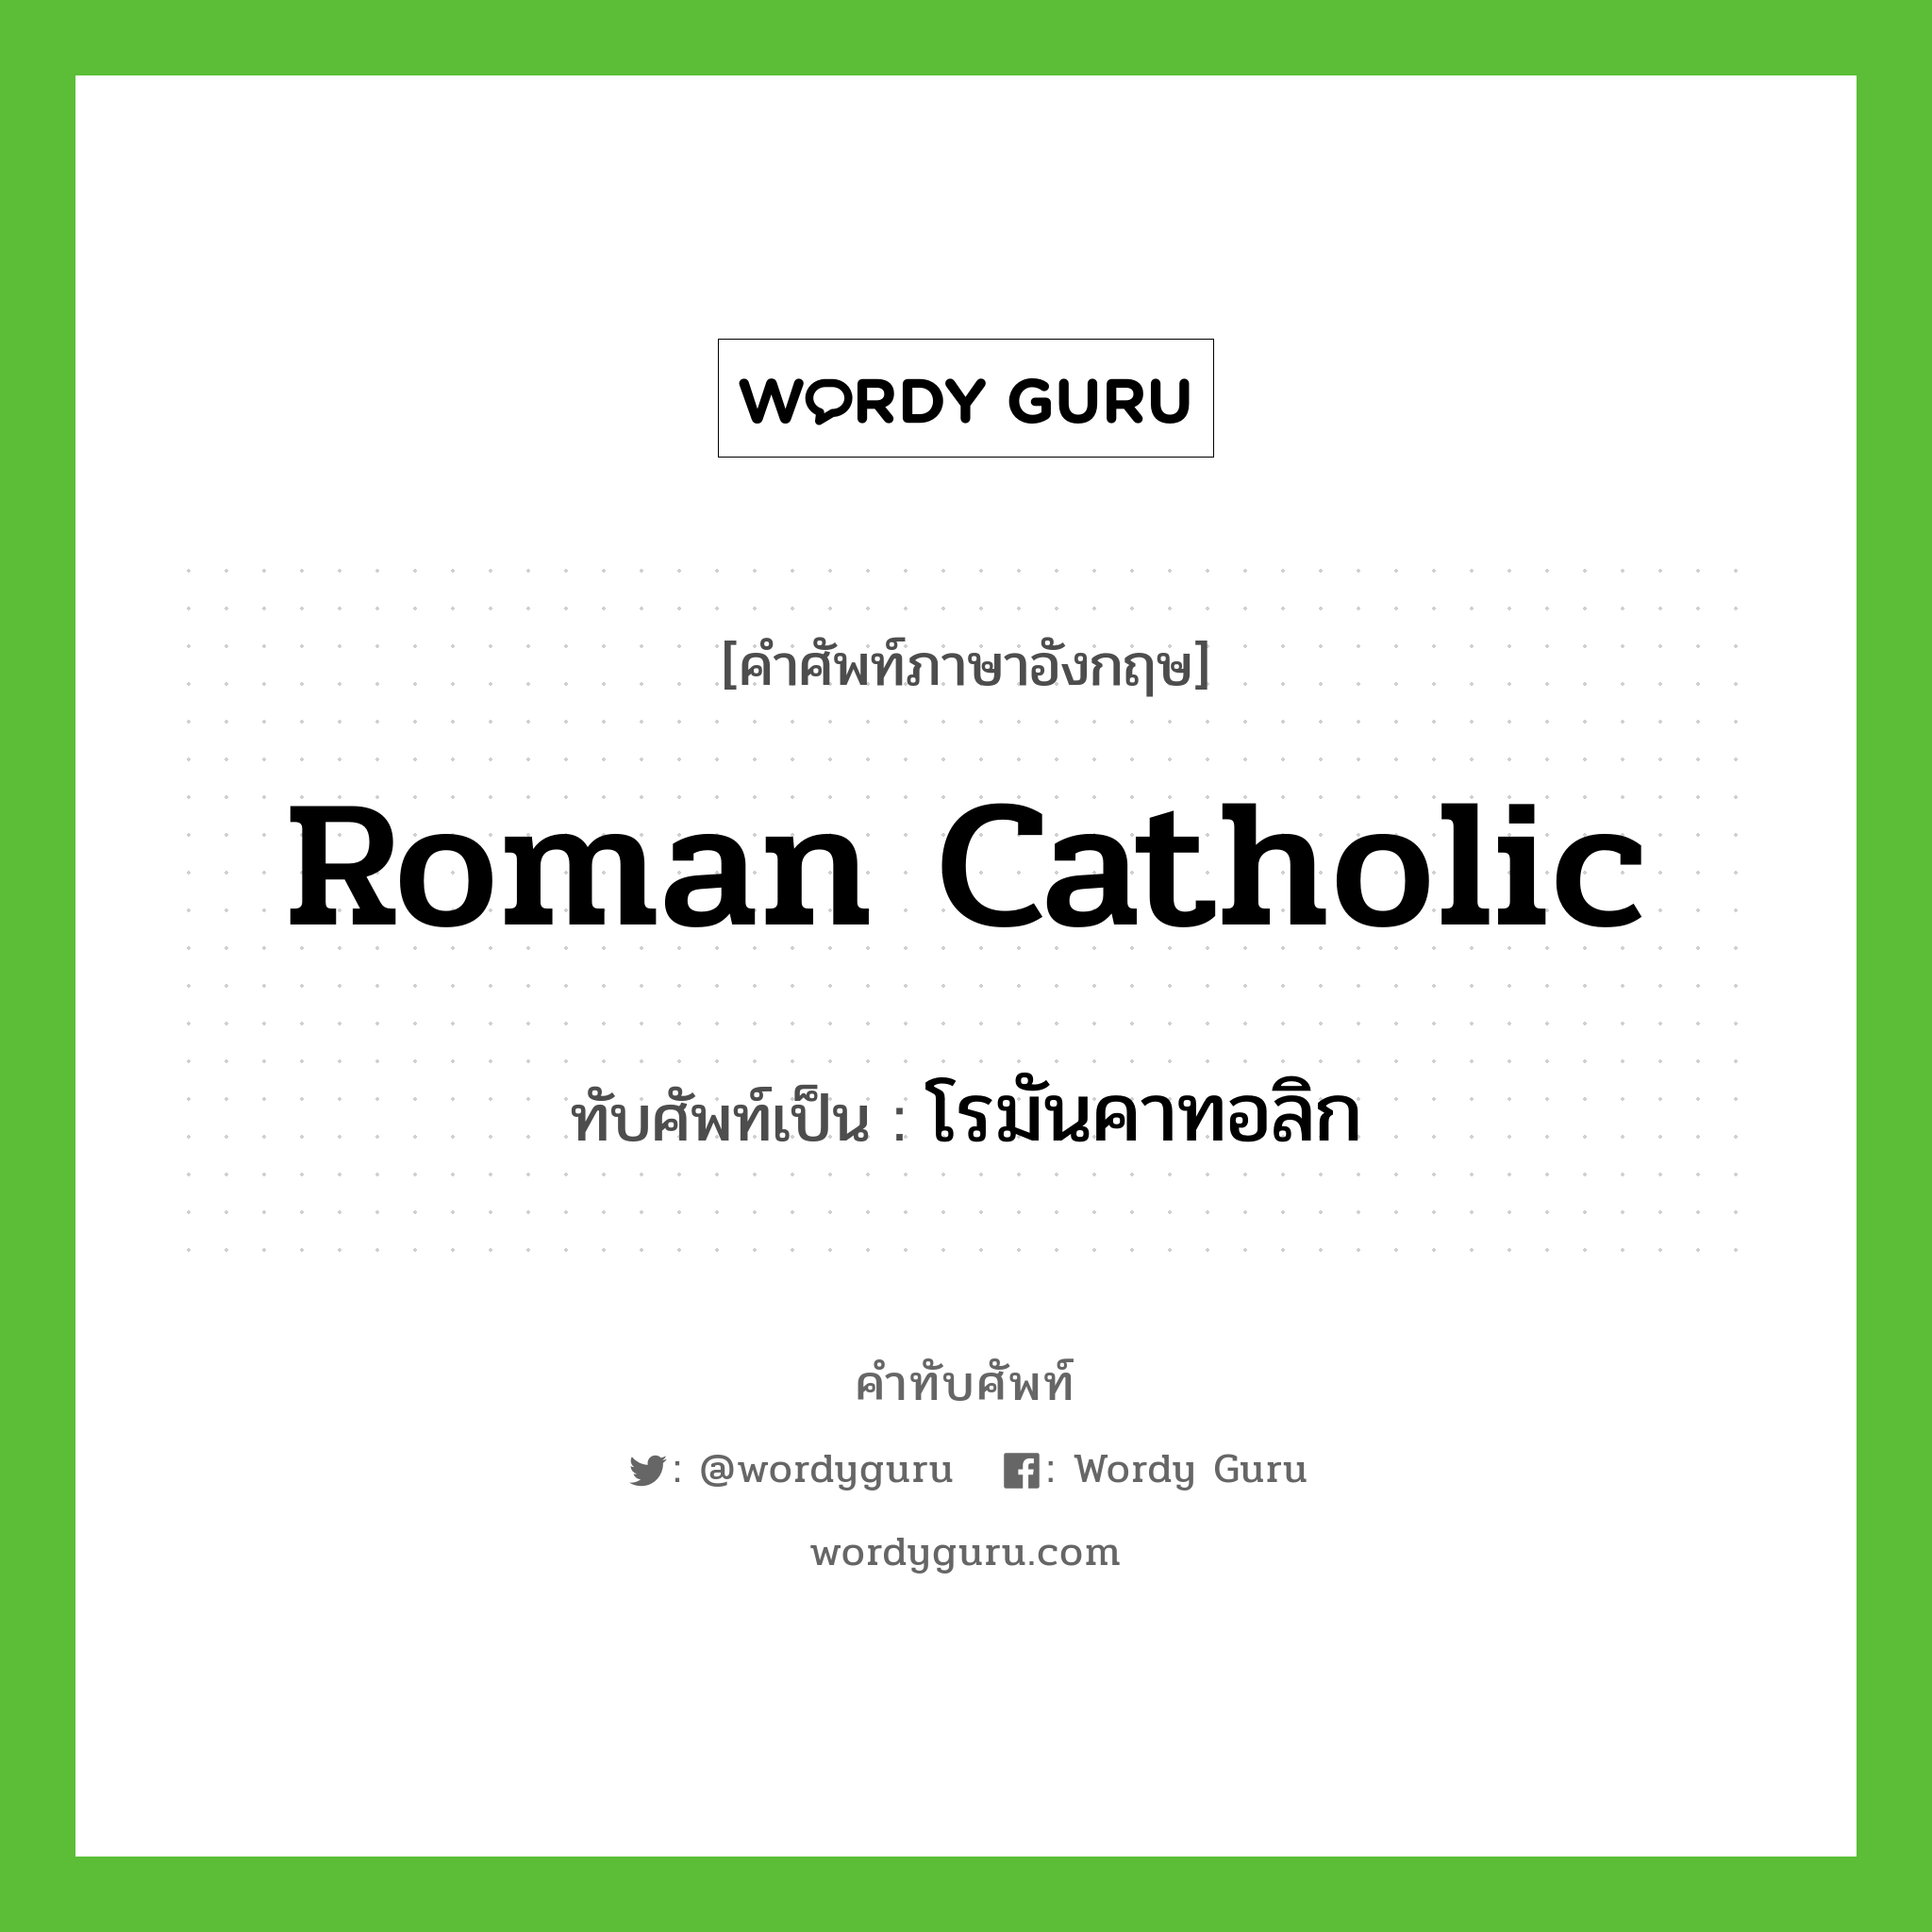 โรมันคาทอลิก เขียนอย่างไร?, คำศัพท์ภาษาอังกฤษ โรมันคาทอลิก ทับศัพท์เป็น Roman Catholic